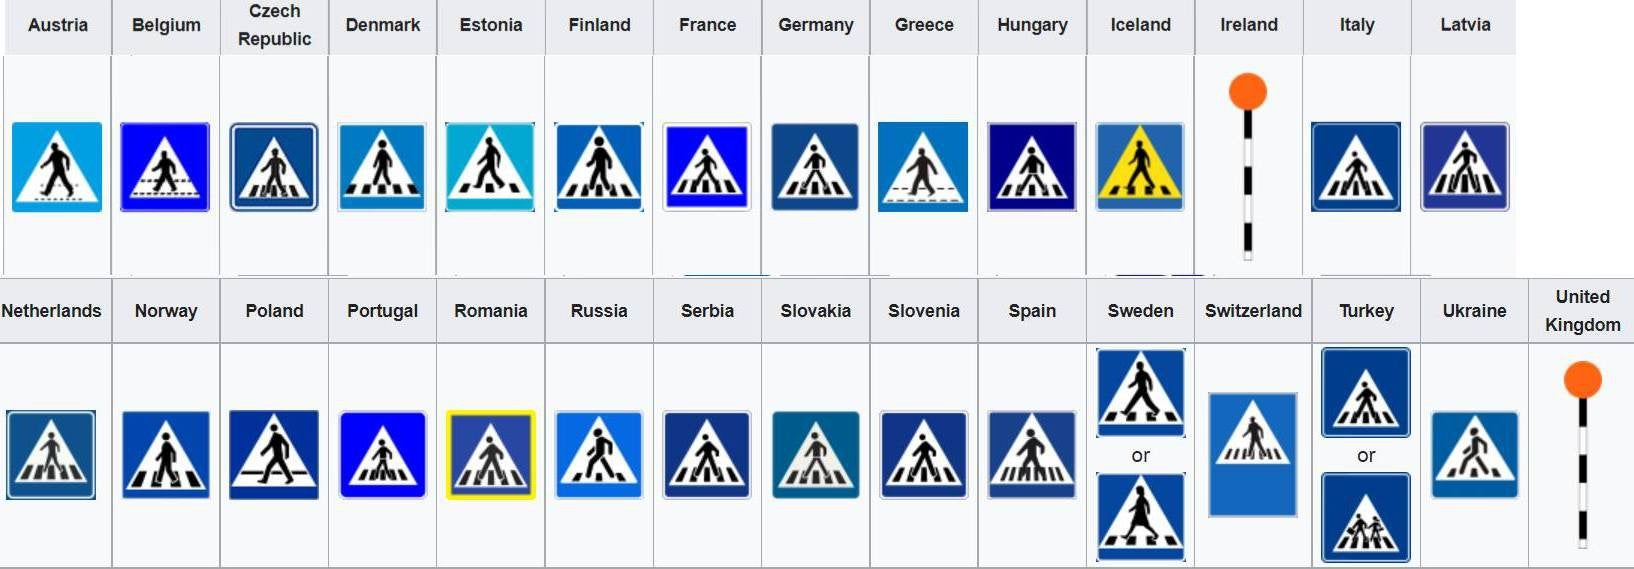 europe-roads-sign-walk.jpg